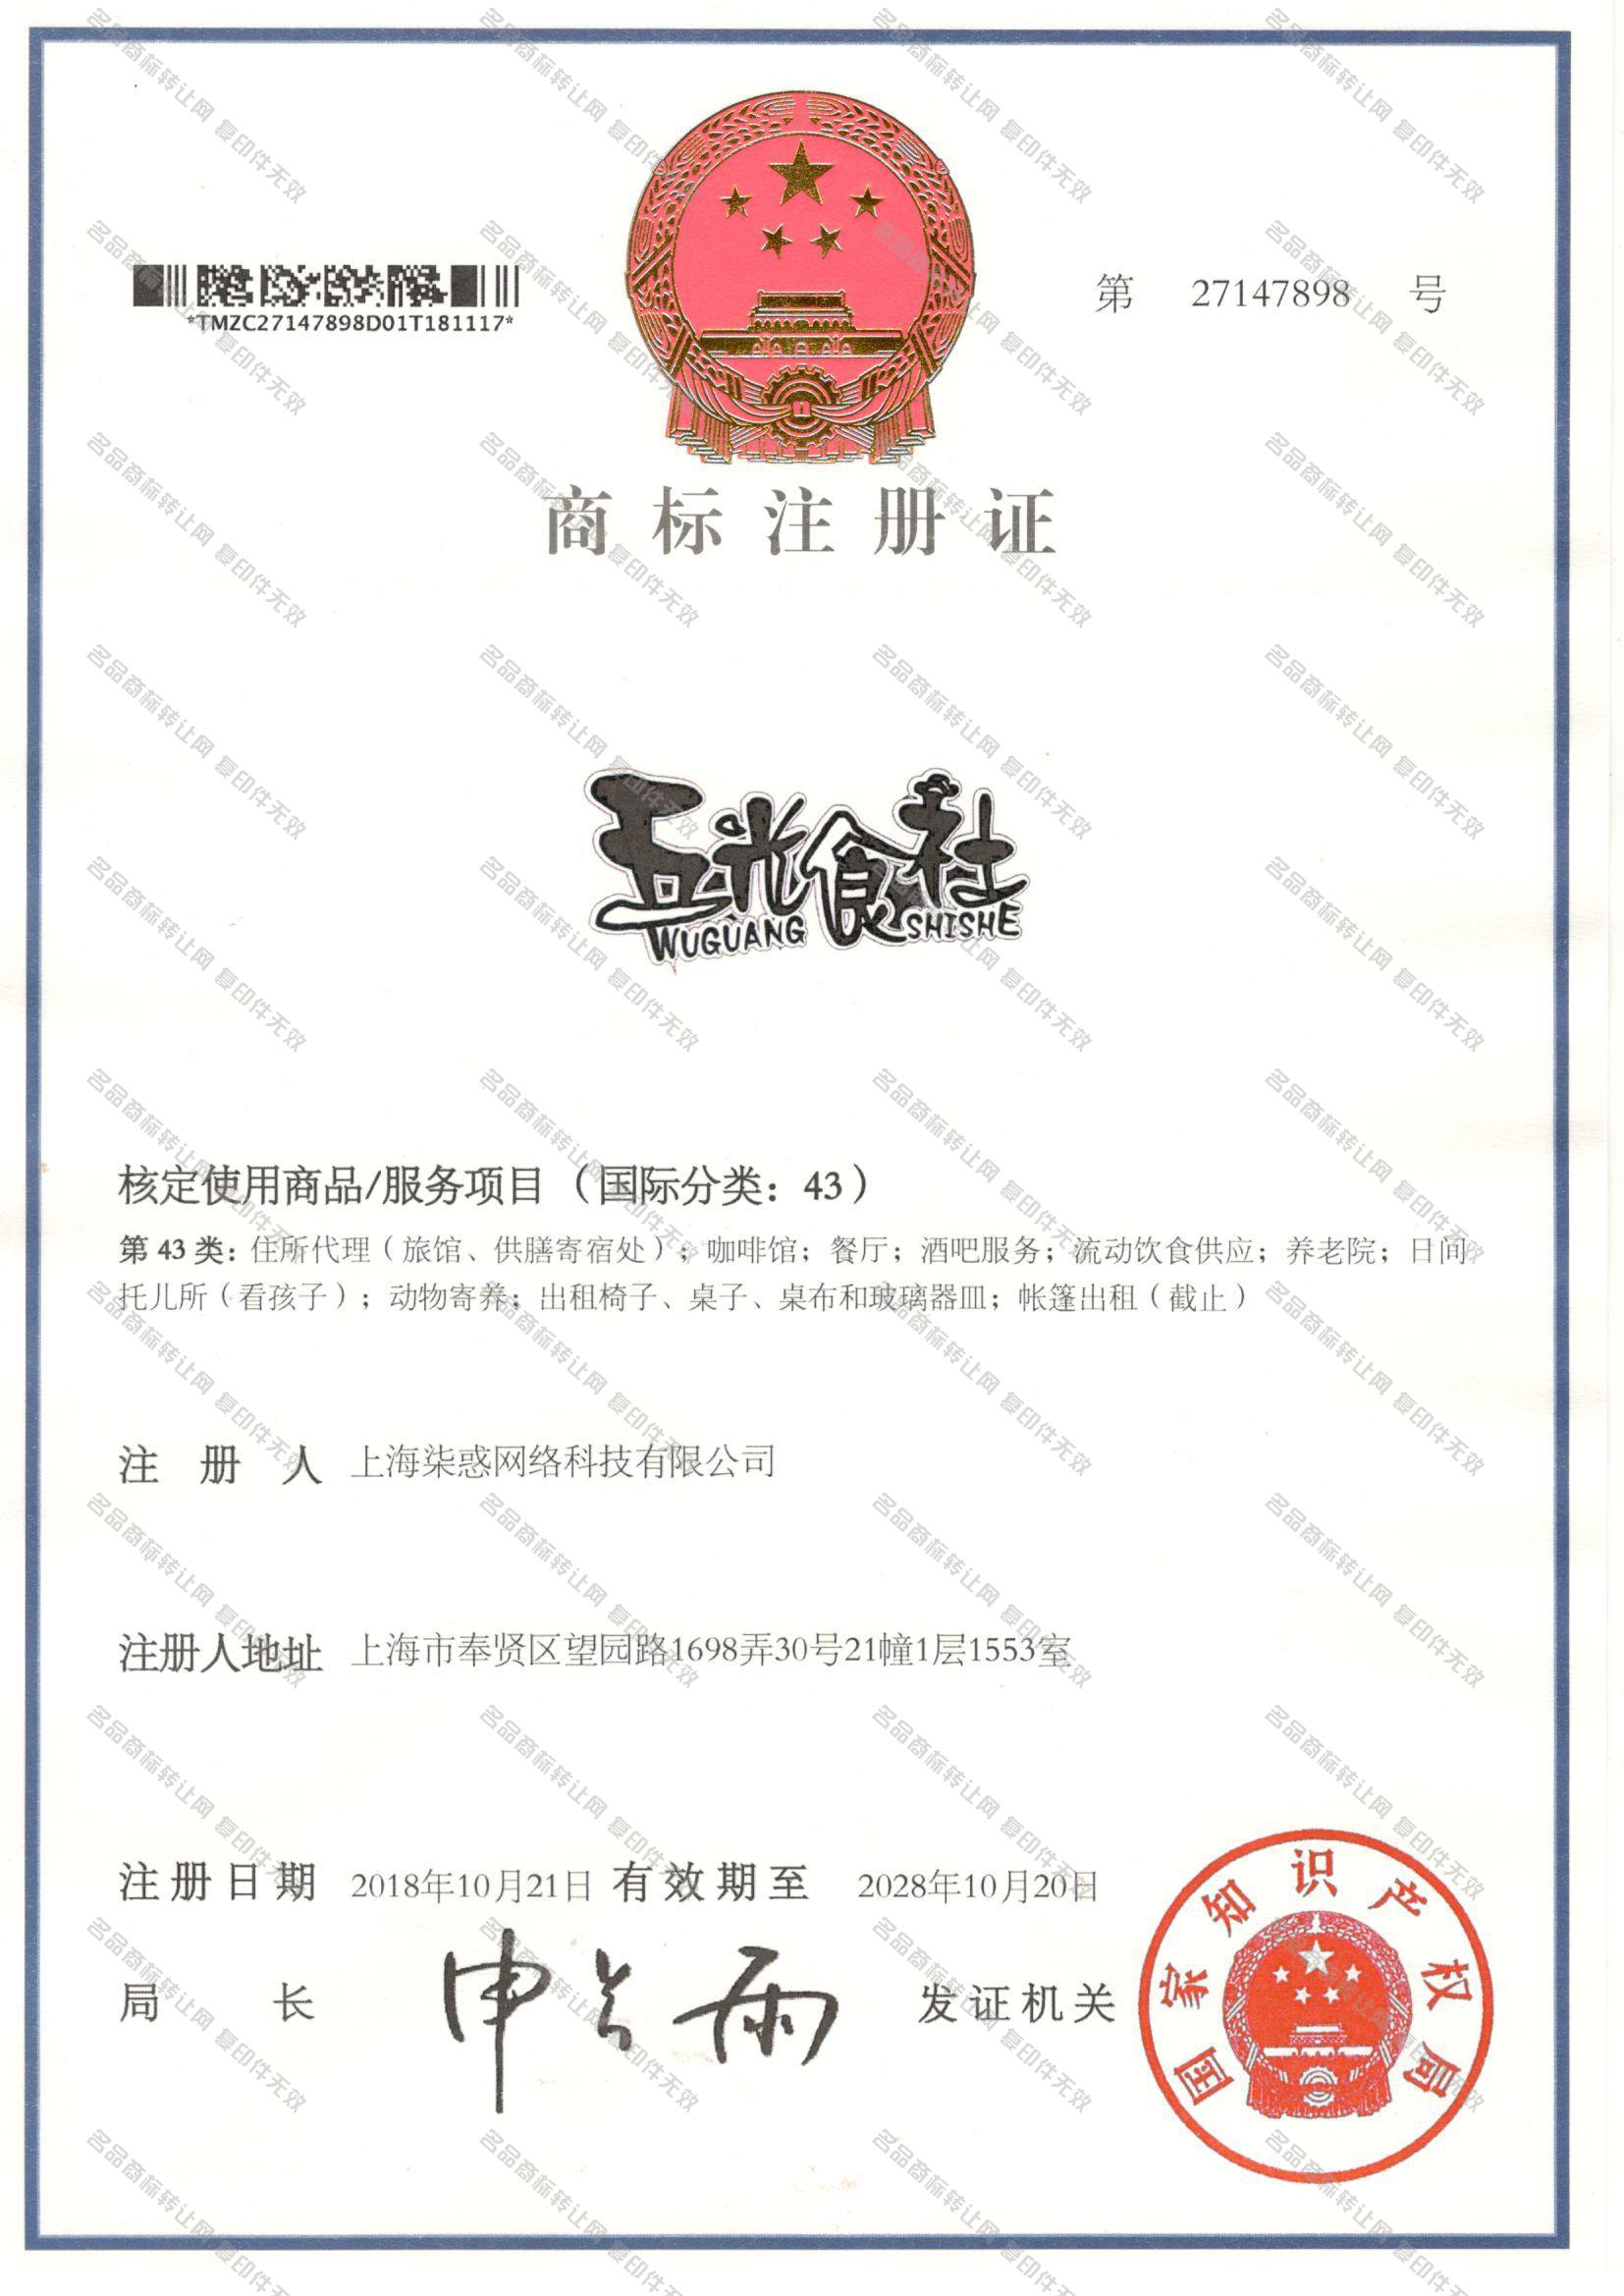 五光食社 WUGUANGSHISHE注册证